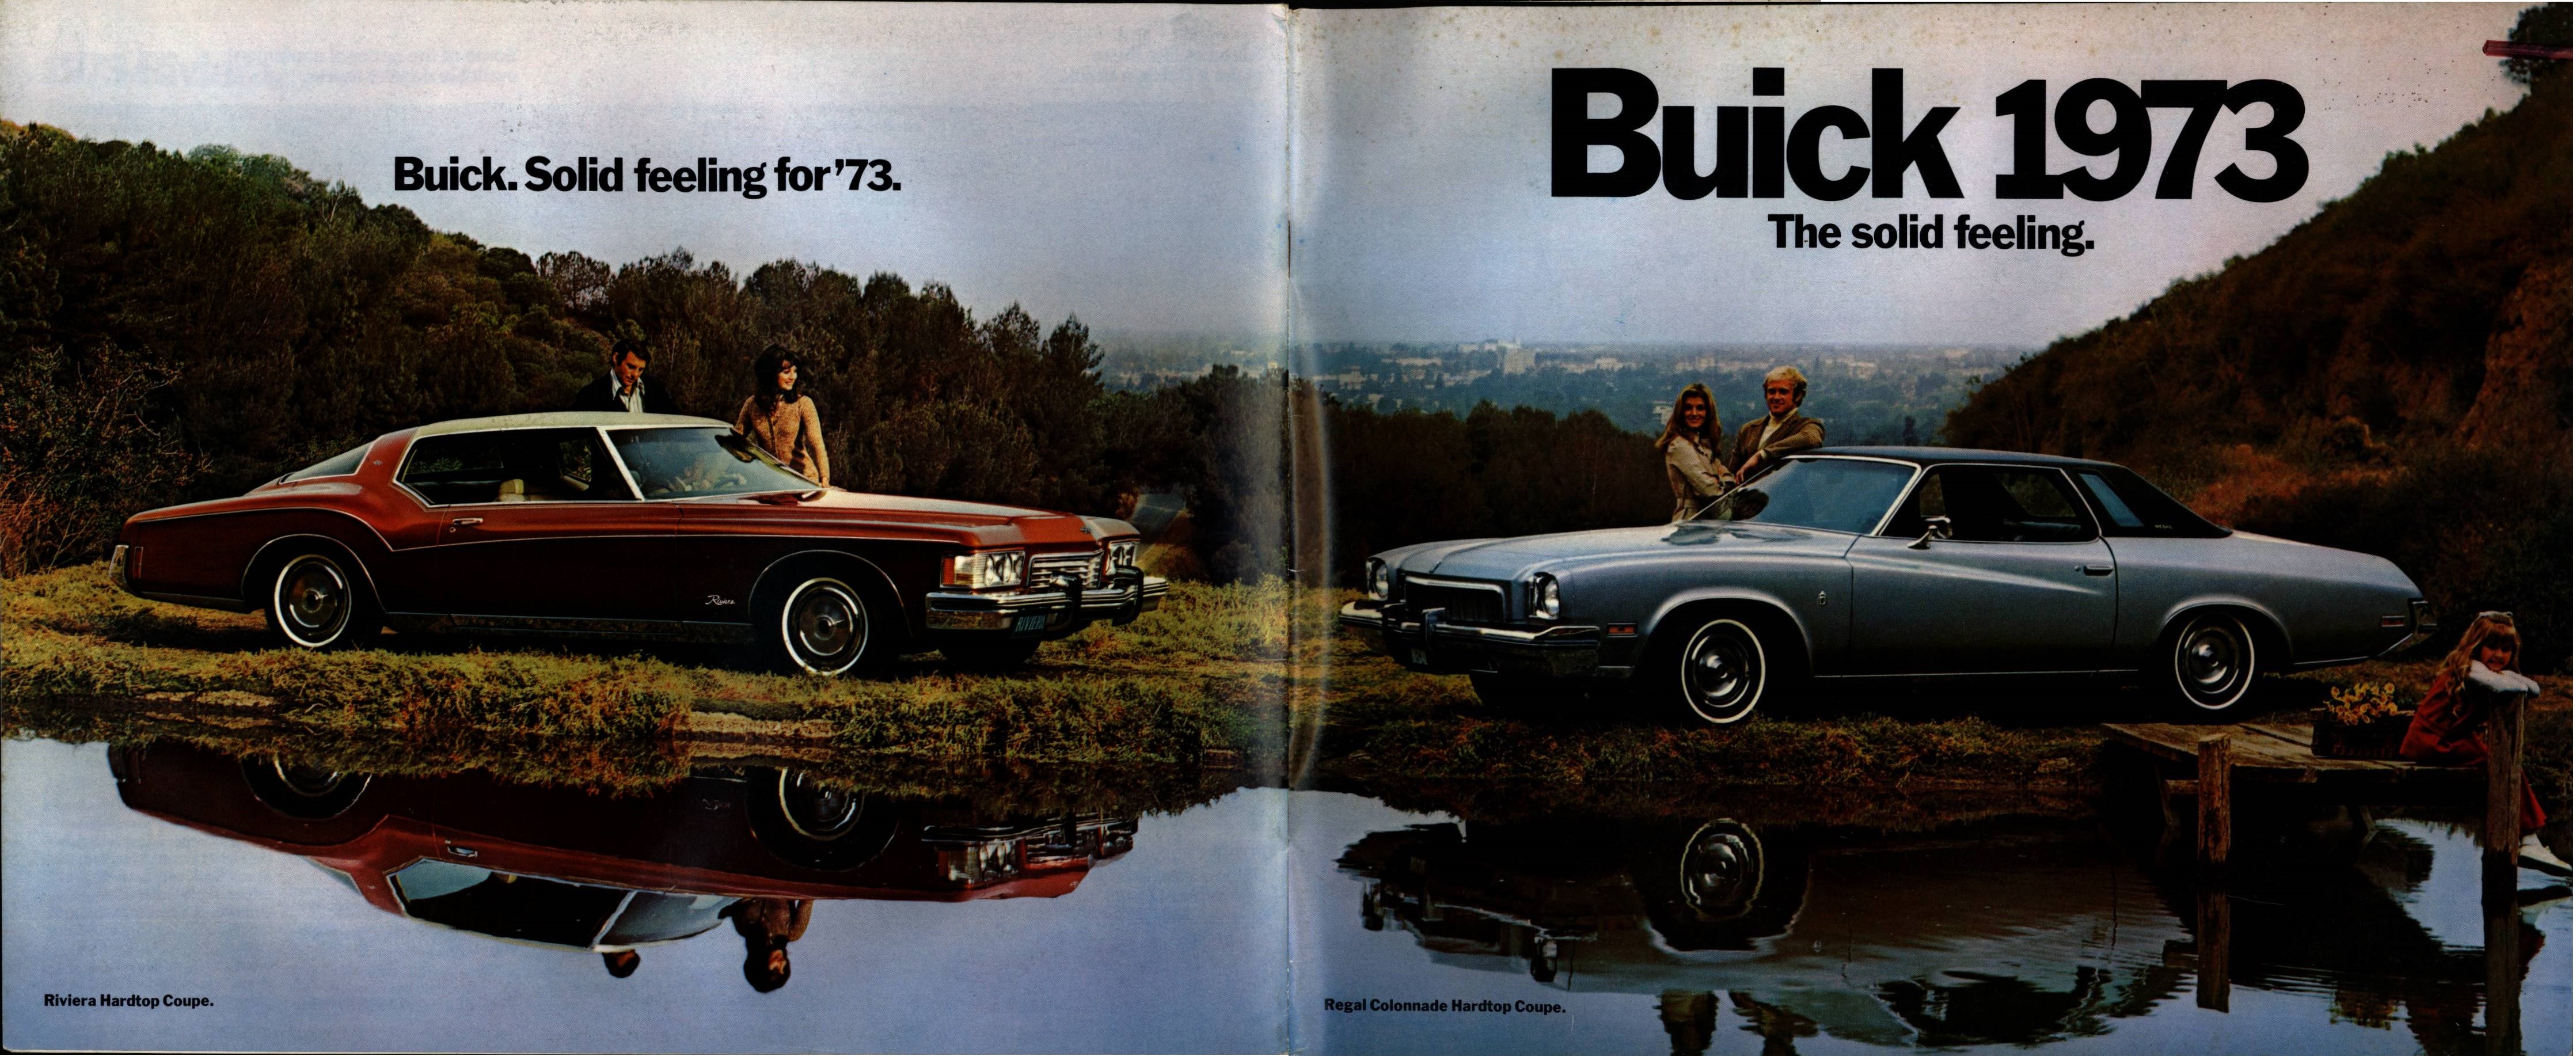 1973 Buick Full Line Brochure 30-00